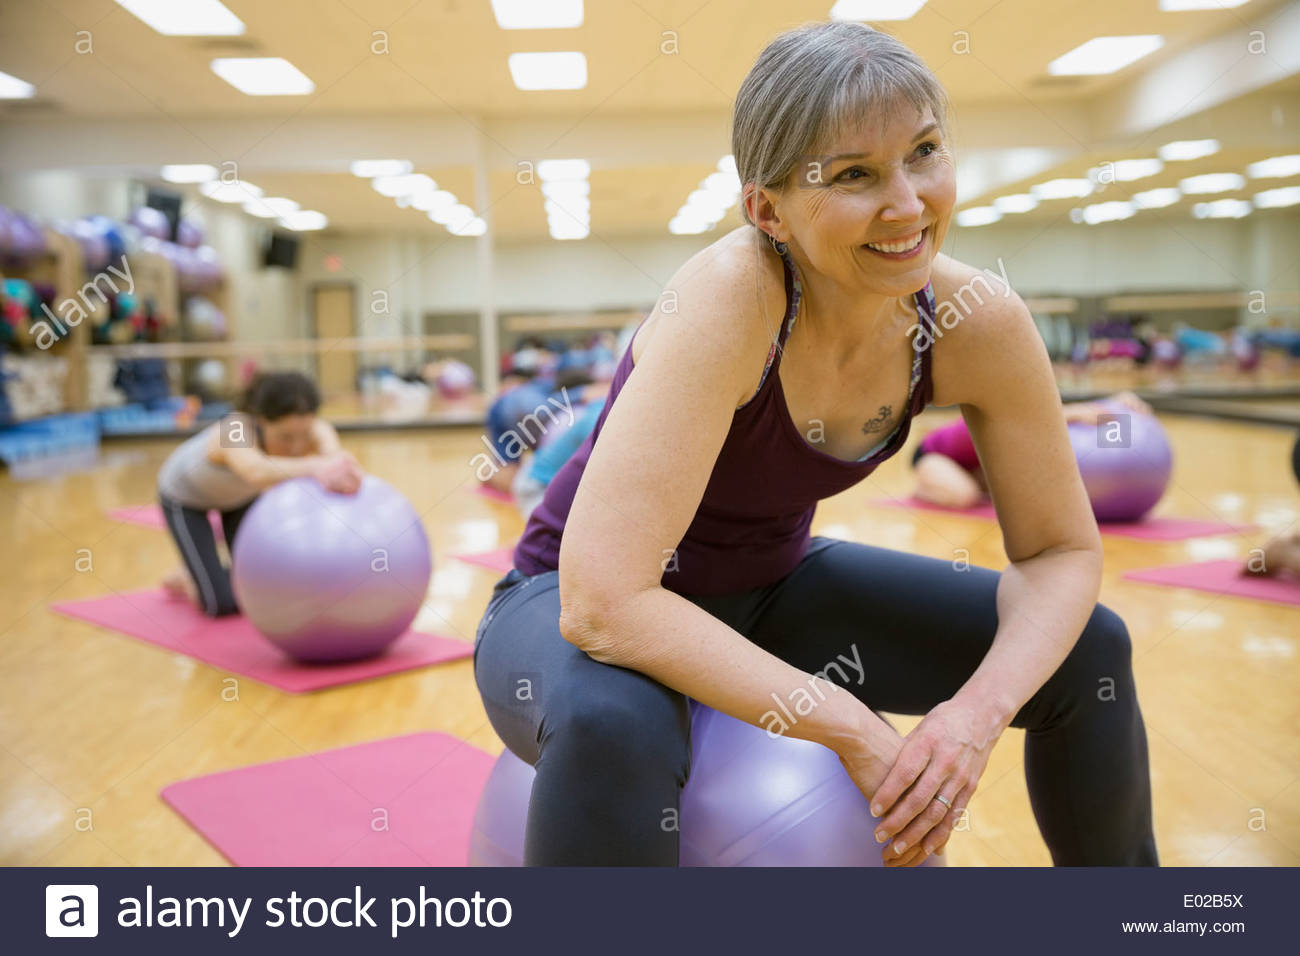 Mujer sonriente en el fitness ball en clase de ejercicios Foto de stock